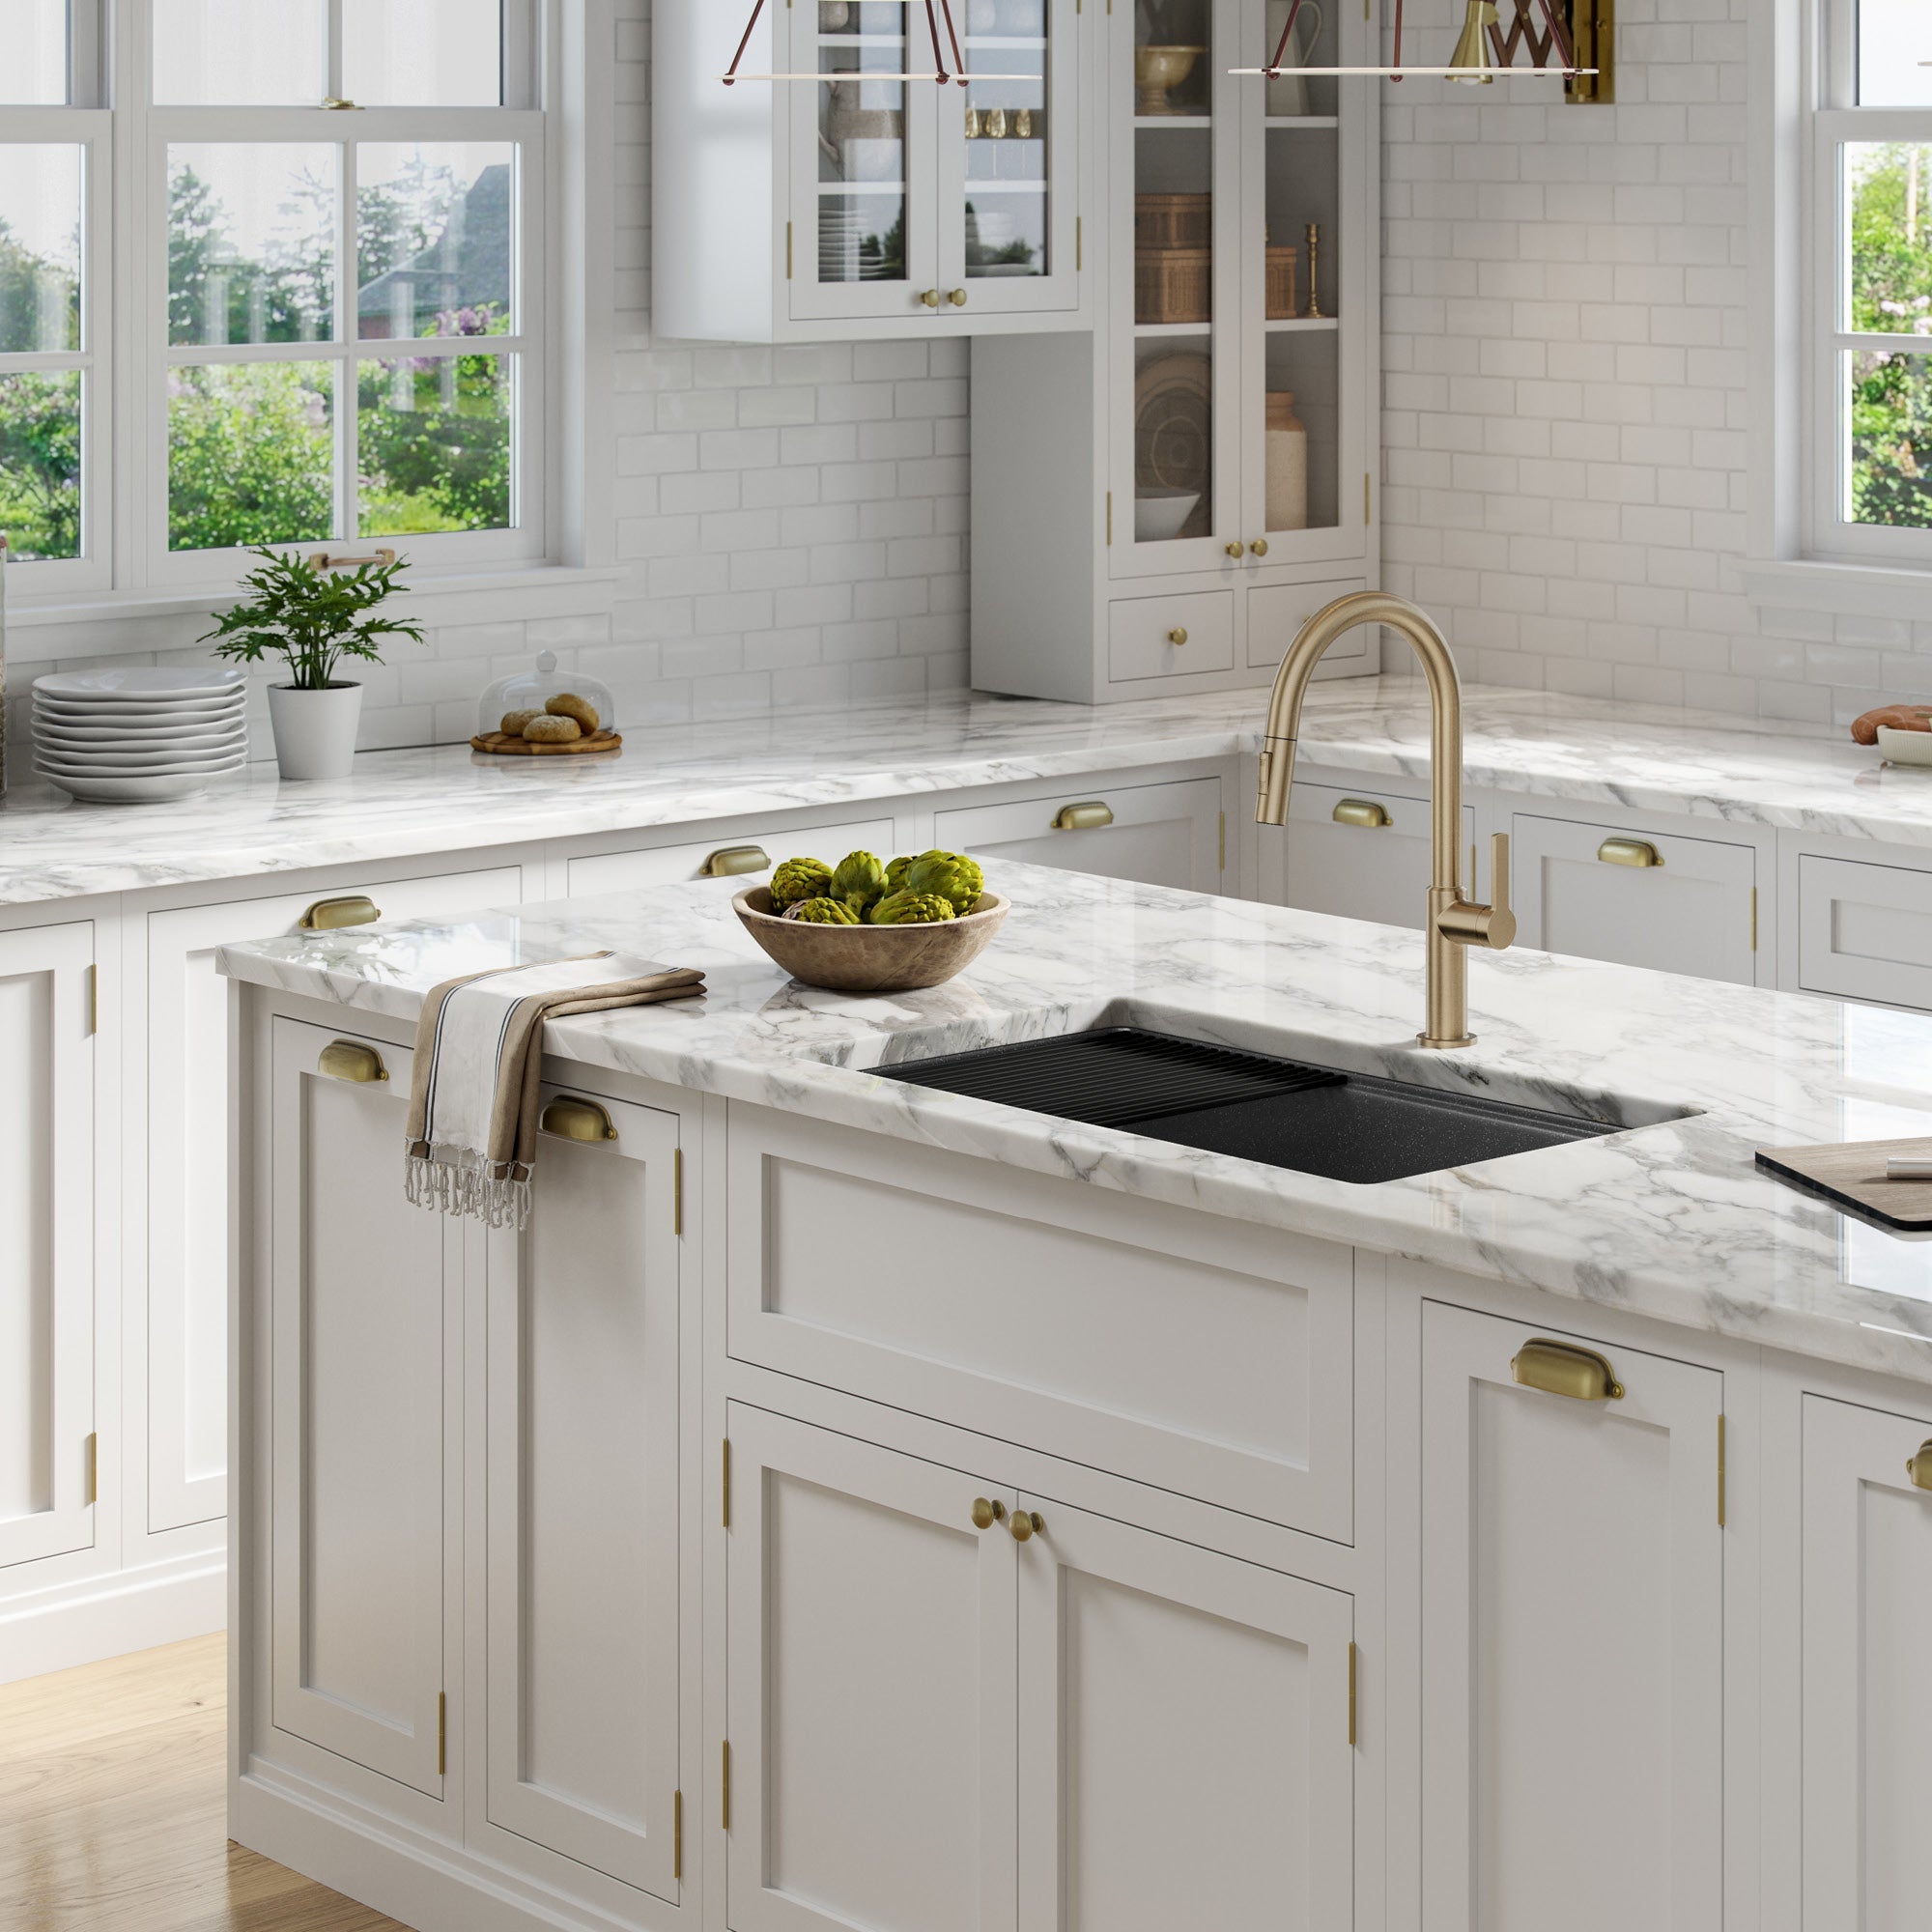 https://directsinks.com/cdn/shop/products/KRAUS-Bellucci-Workstation-33-Undermount-Granite-Composite-Kitchen-Sink-in-Metallic-Black-with-Accessories-3_2000x2000.jpg?v=1664276255